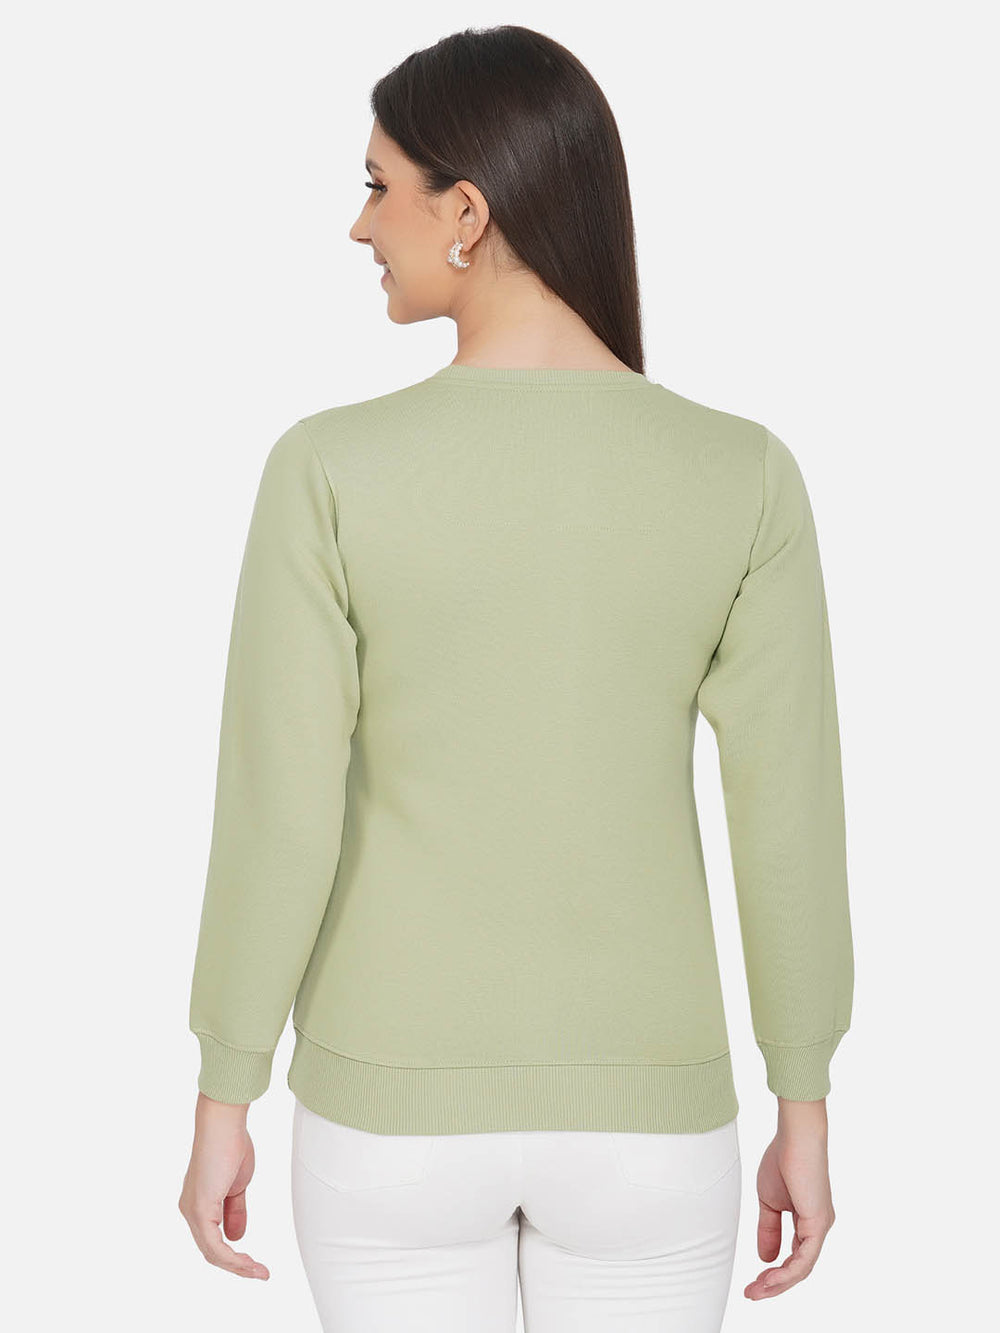 Olive Green Printed Fleece Sweatshirt